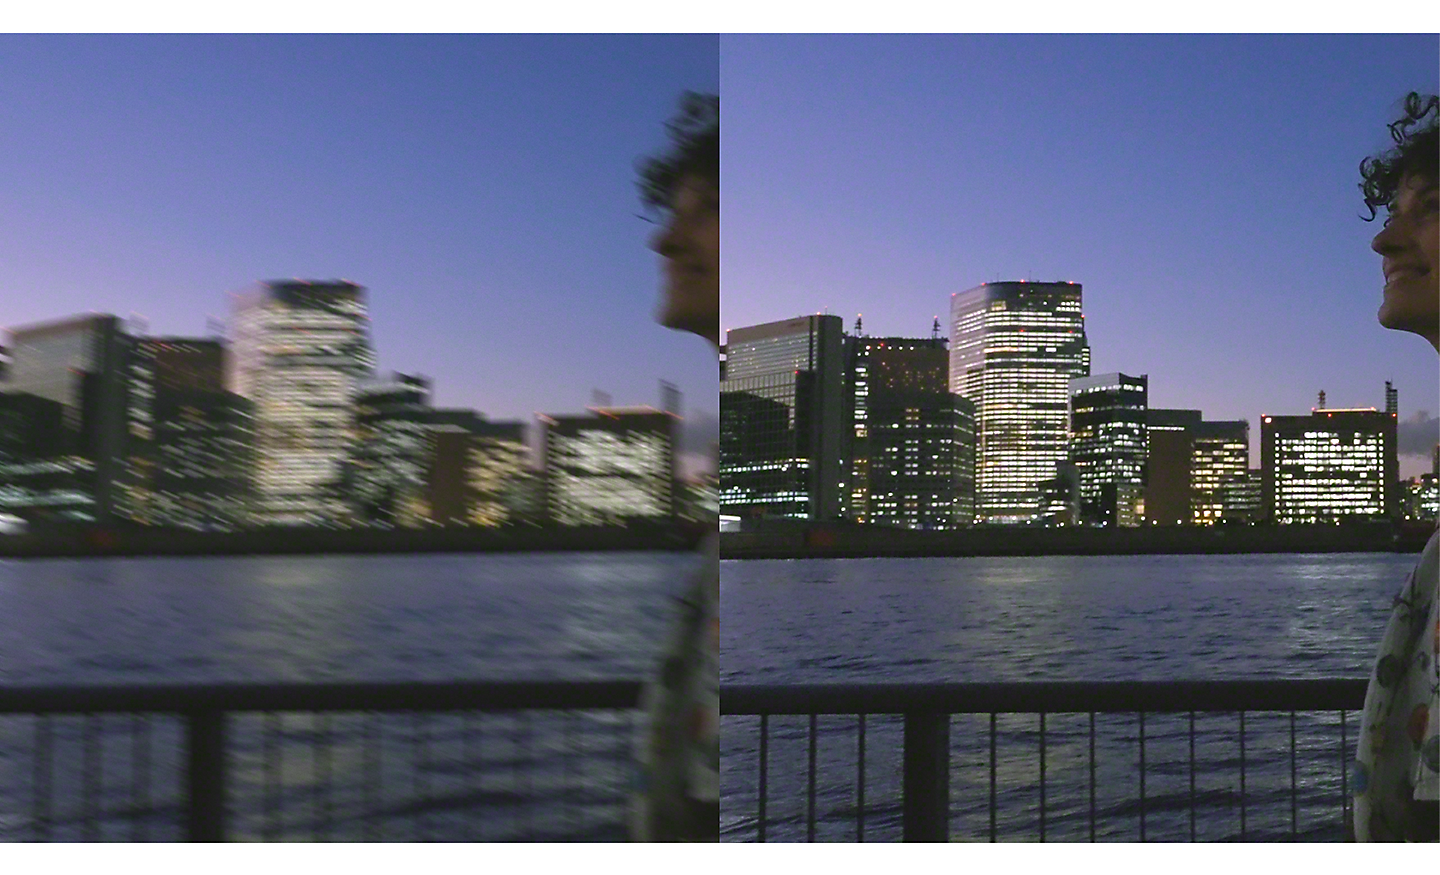 Immagine doppia di un paesaggio urbano notturno. L'immagine a sinistra è sfocata, l'immagine a destra è nitida